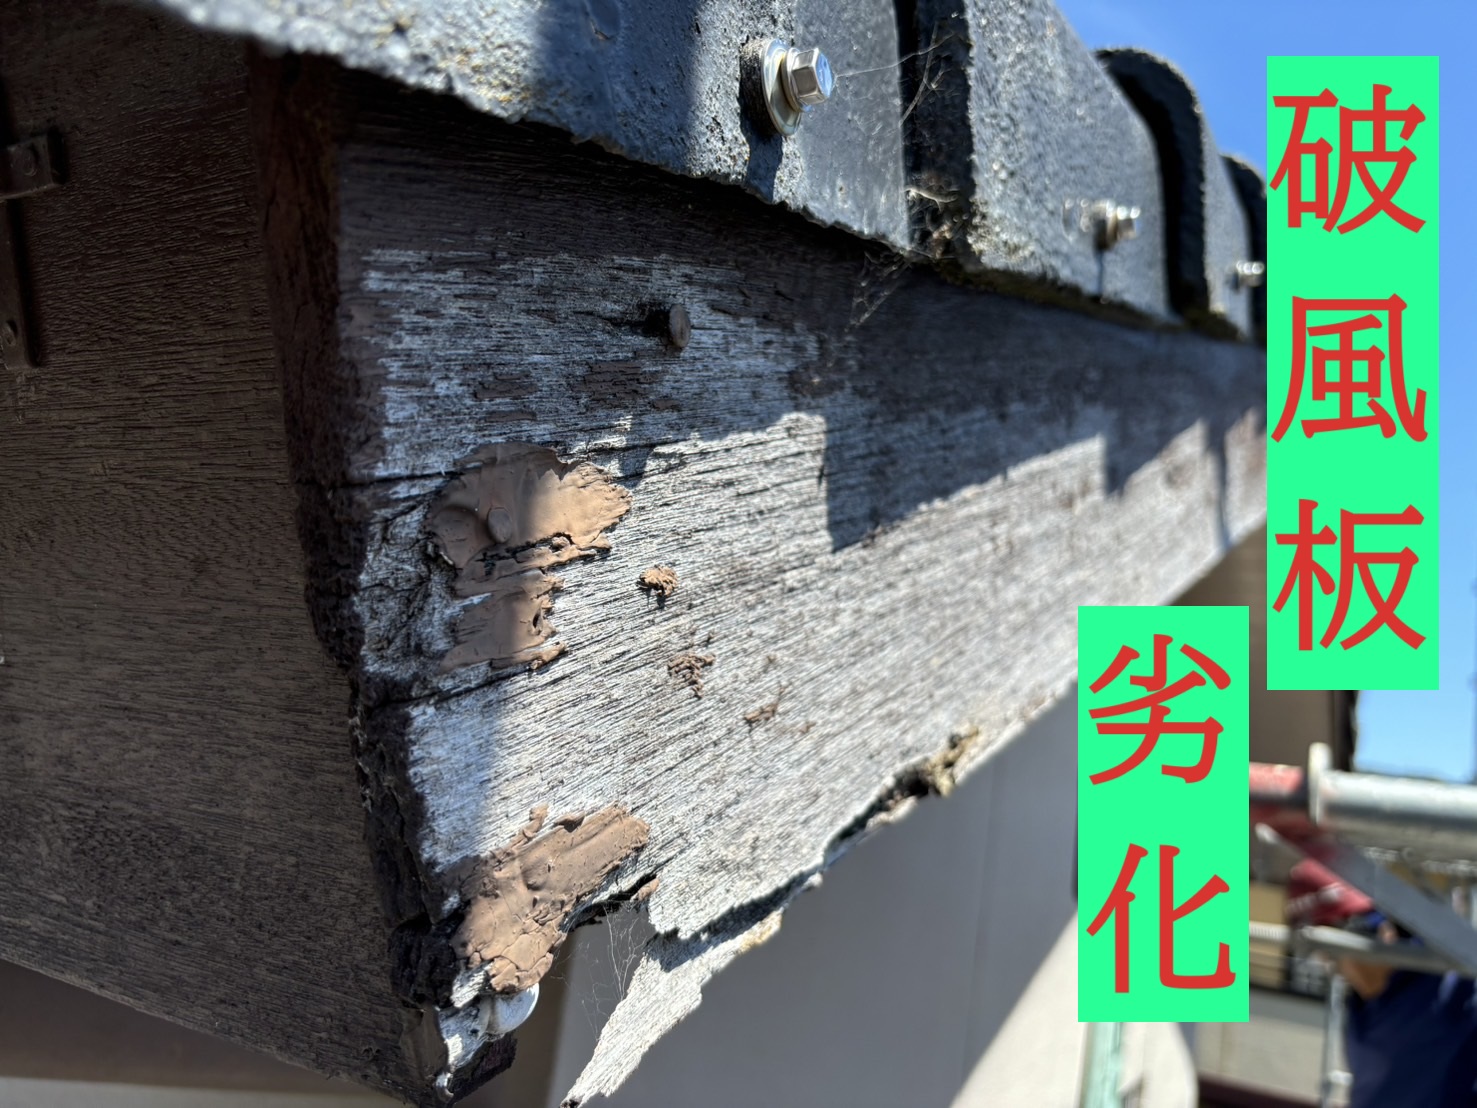 東員町にて生産中止のモニエル瓦の屋根診断と破風板劣化で板金修理の提案